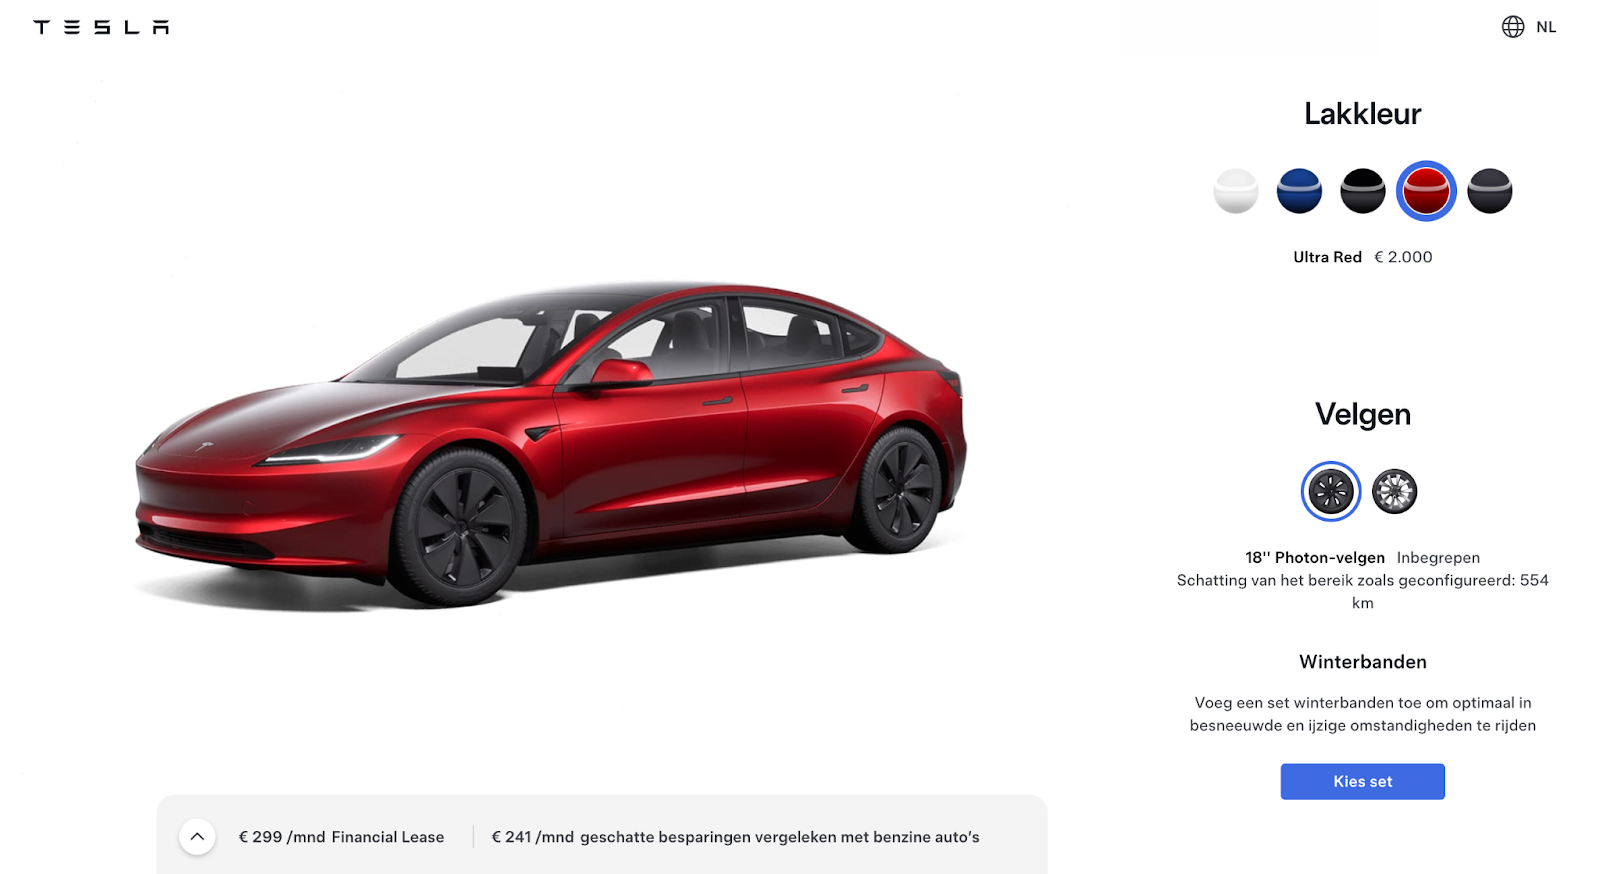 productbeschrijving van een Tesla auto